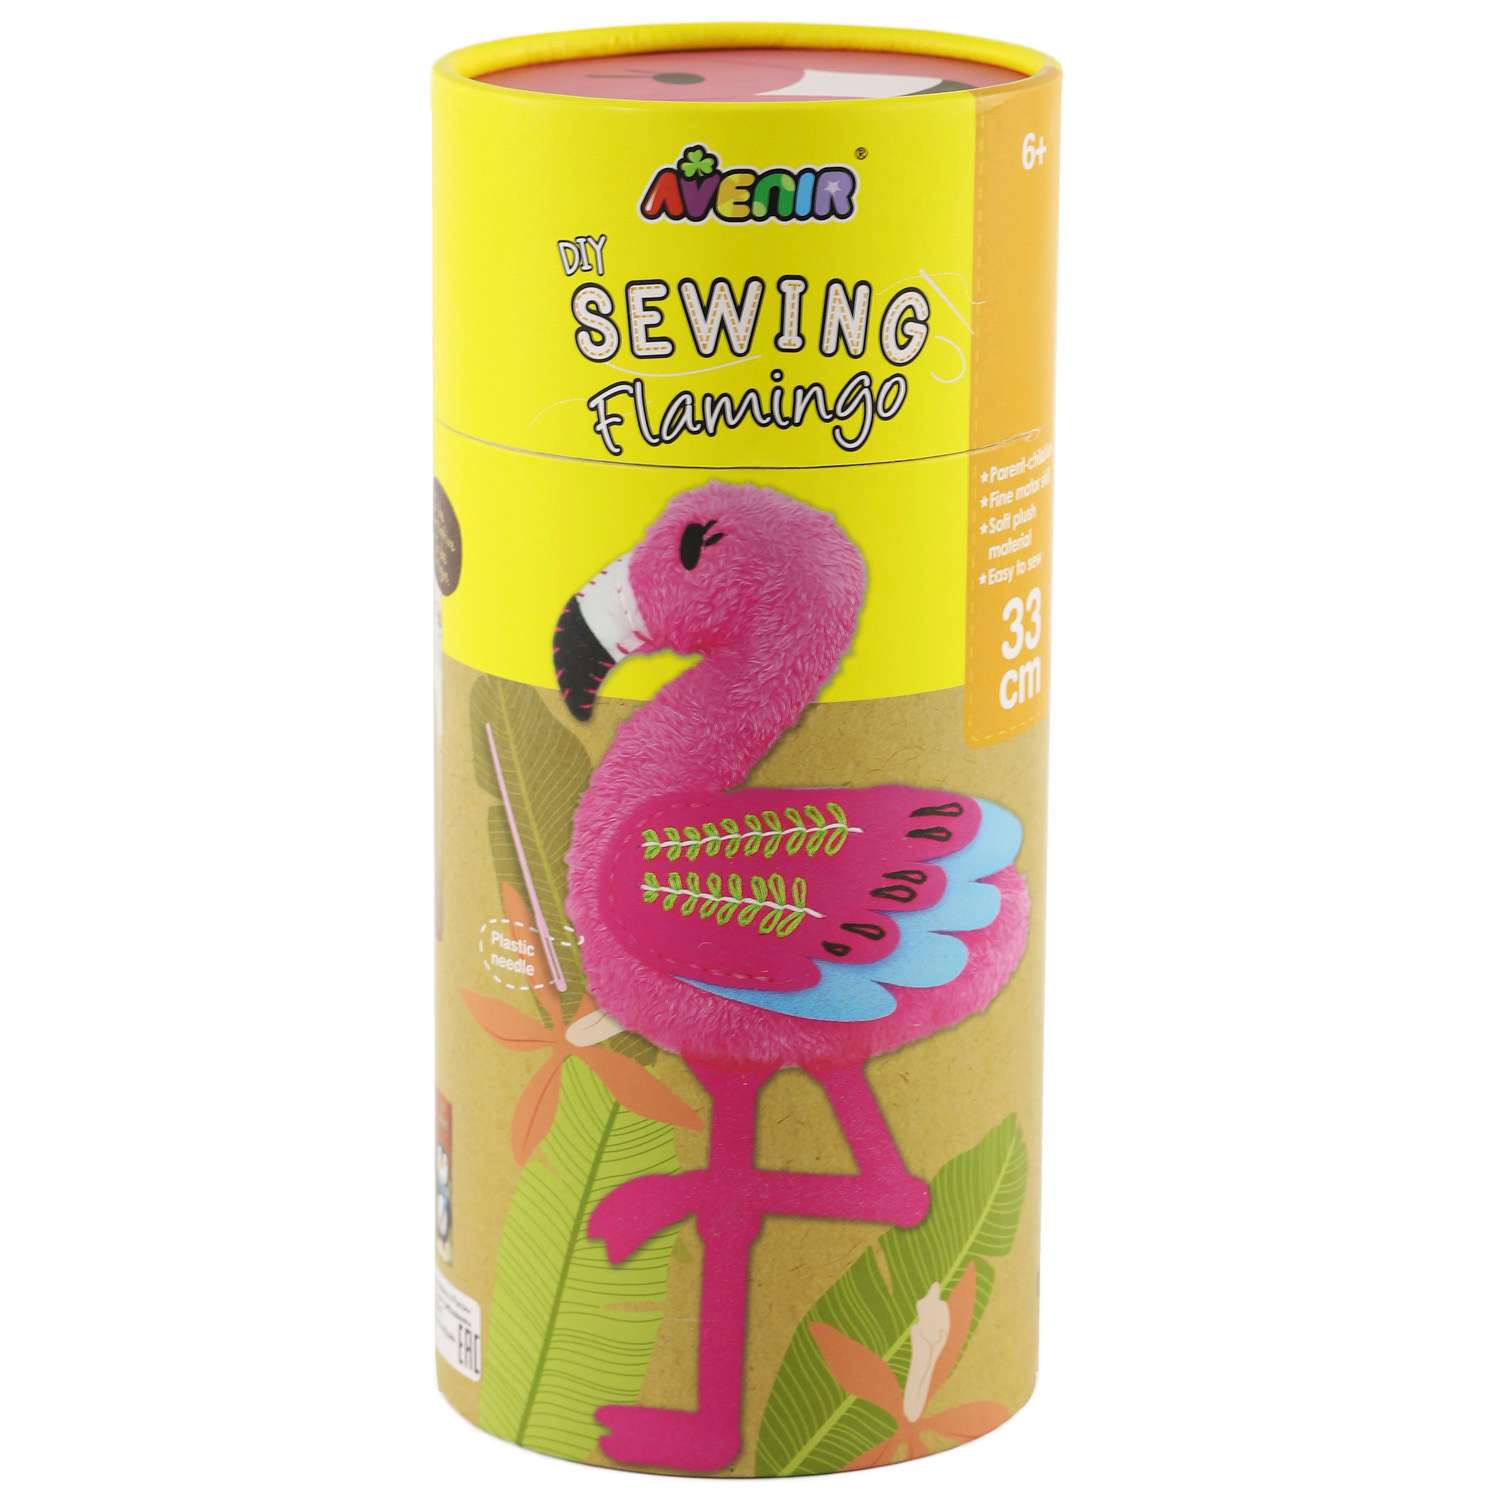 Набор для шитья Avenir мягкая игрушка Фламинго 33 см - фото 2